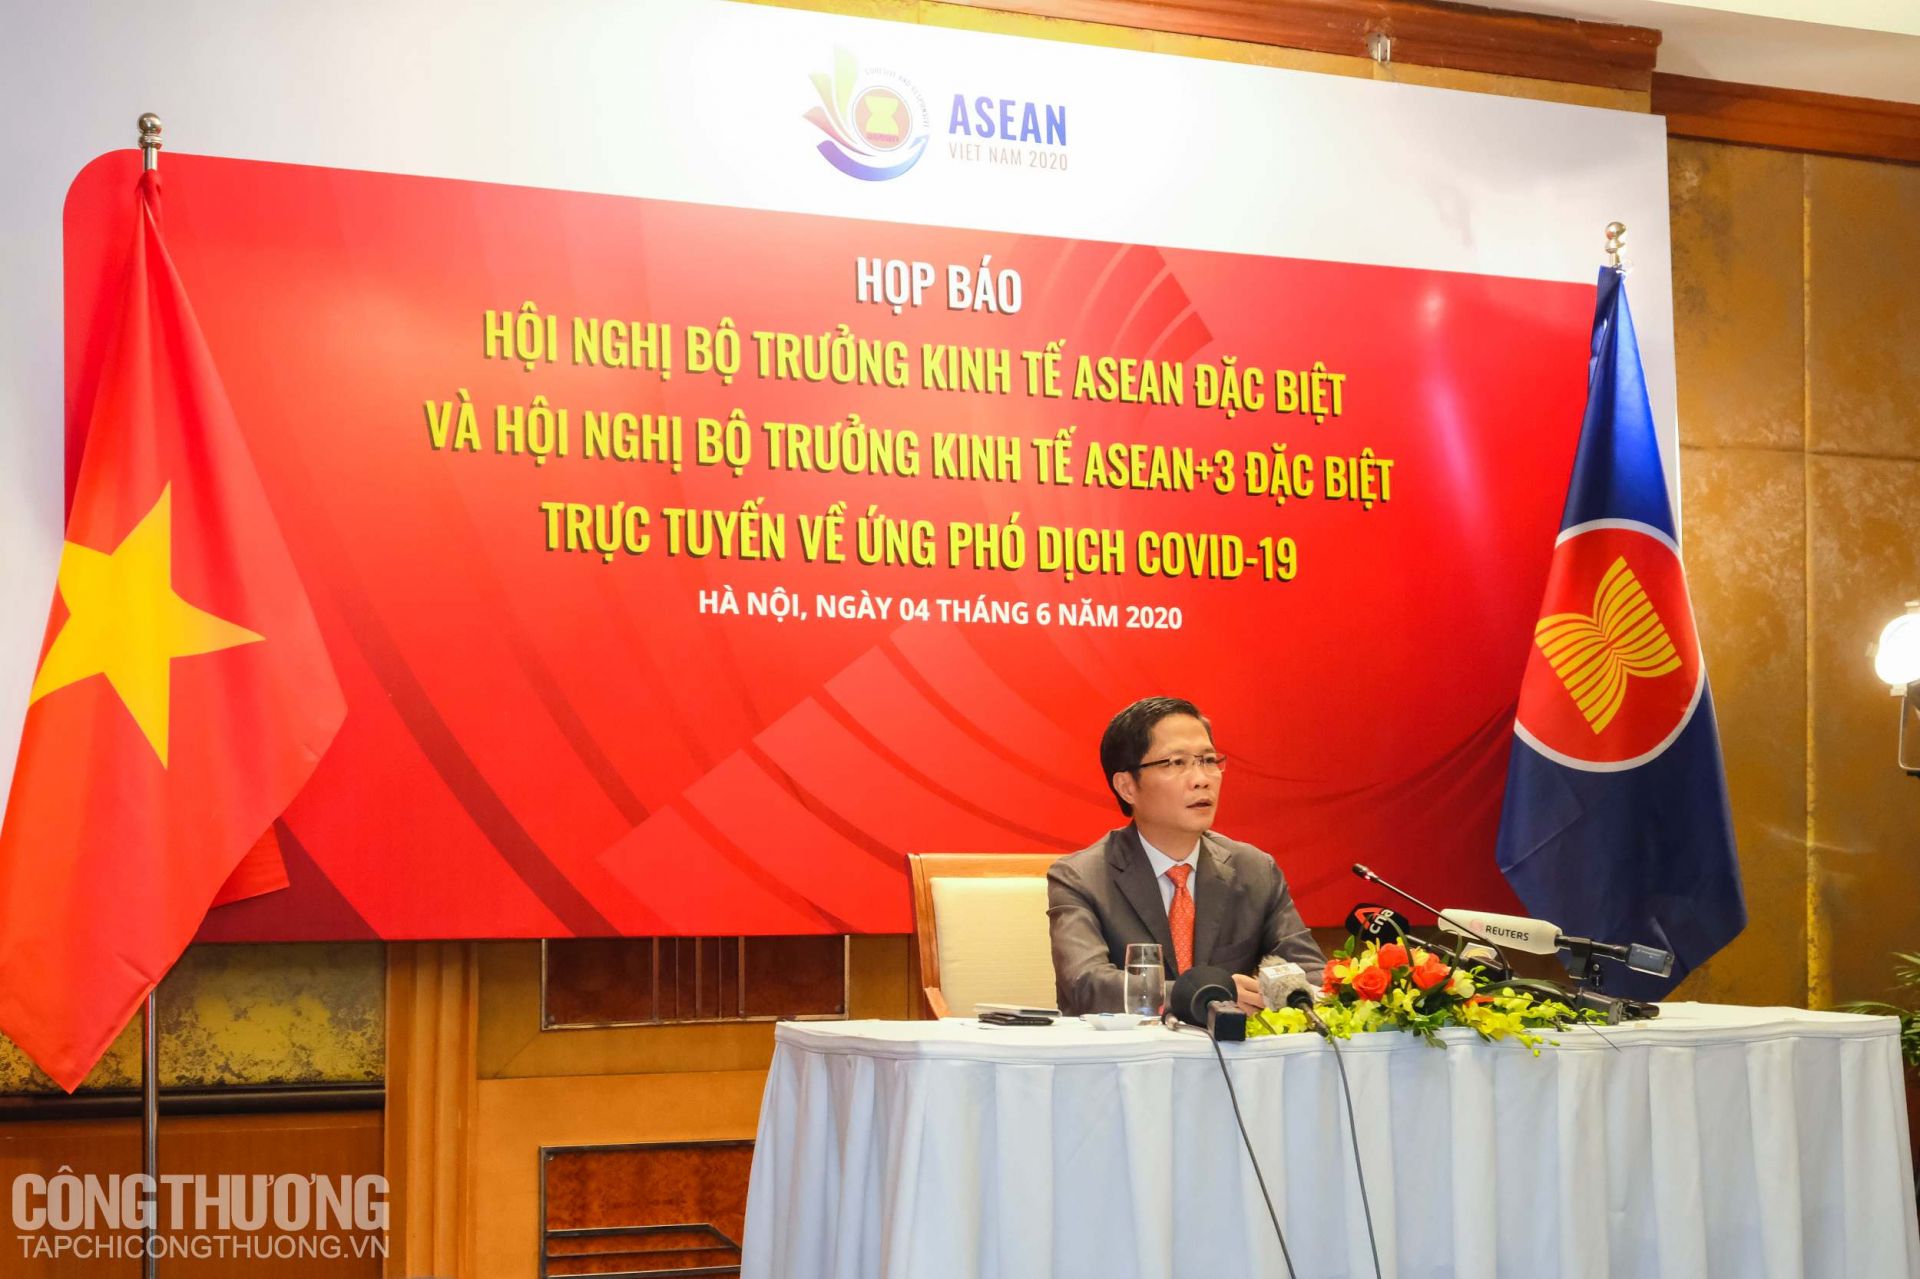 Bộ trưởng Trần Tuấn Anh chủ trì buổi họp báo sau hai hội nghị trực tuyến đặc biệt về ứng phó với dịch Covid-19 của các Bộ trưởng Kinh tế ASEAN và ASEAN+3